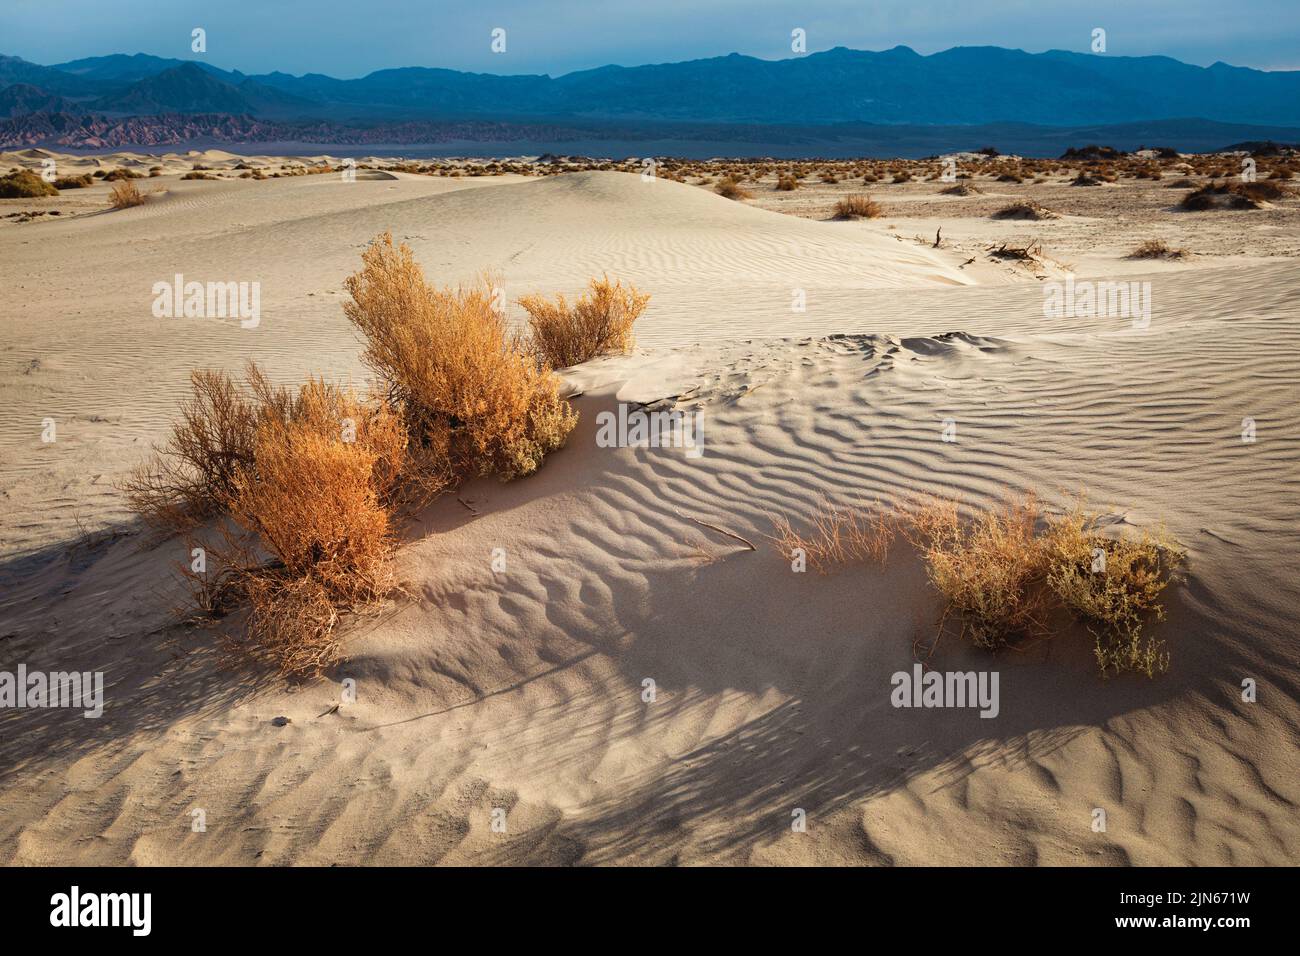 Les dunes de sable de Mesquite Flat s'étendent sur des kilomètres au sol du parc national de la vallée de la mort, dans l'est de la Californie. Banque D'Images